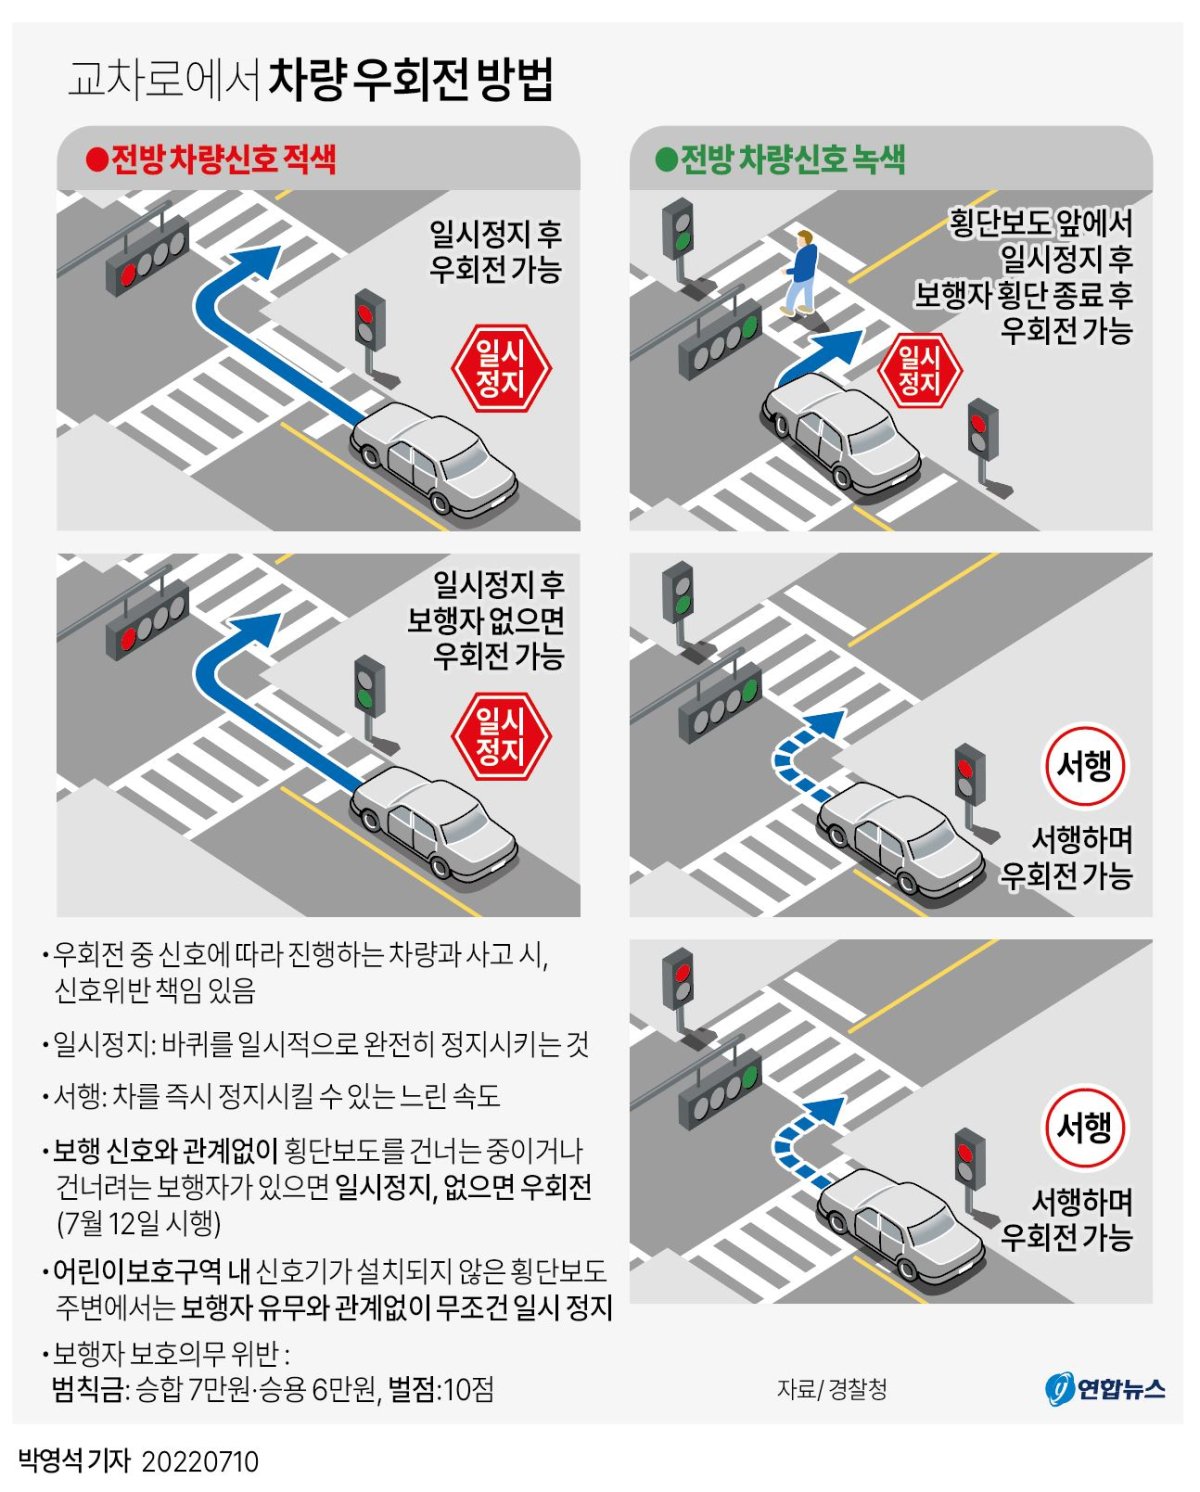 [그래픽] 교차로에서 차량 우회전 방법